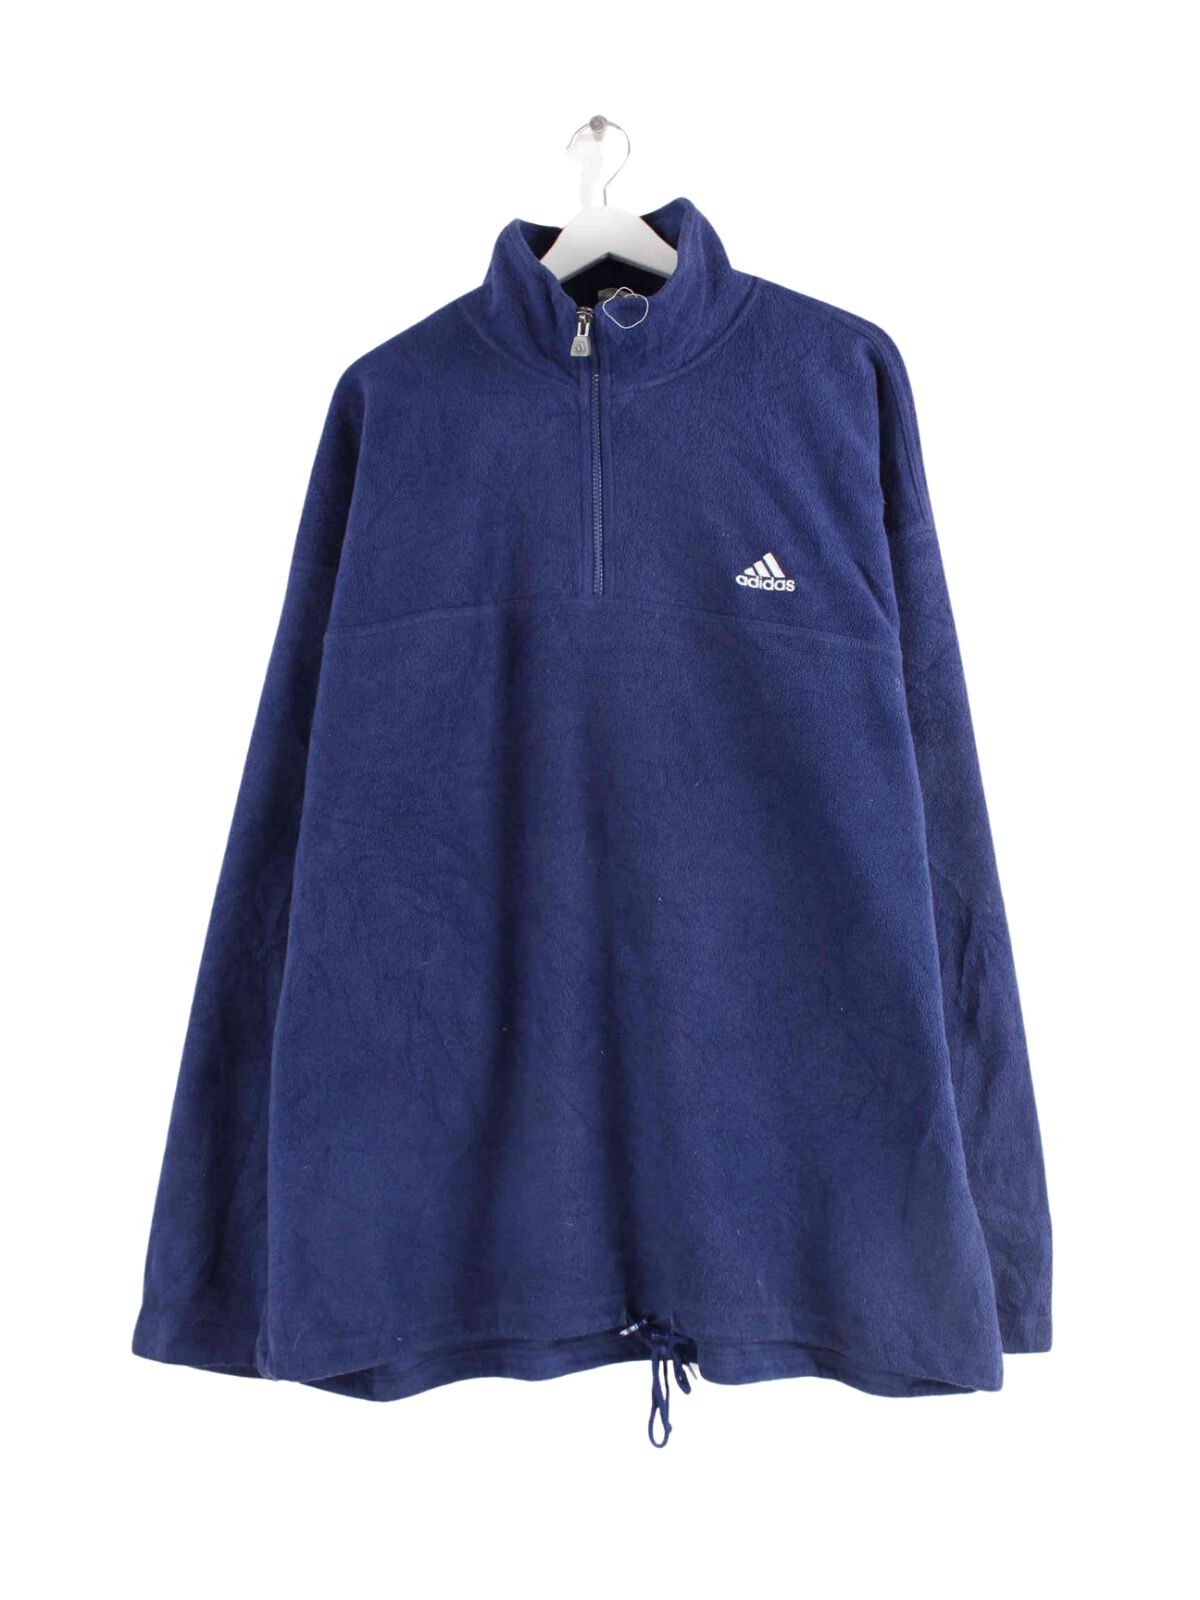 Adidas 90s Vintage Fleece Half Zip Sweater Blau 3XL (front image)